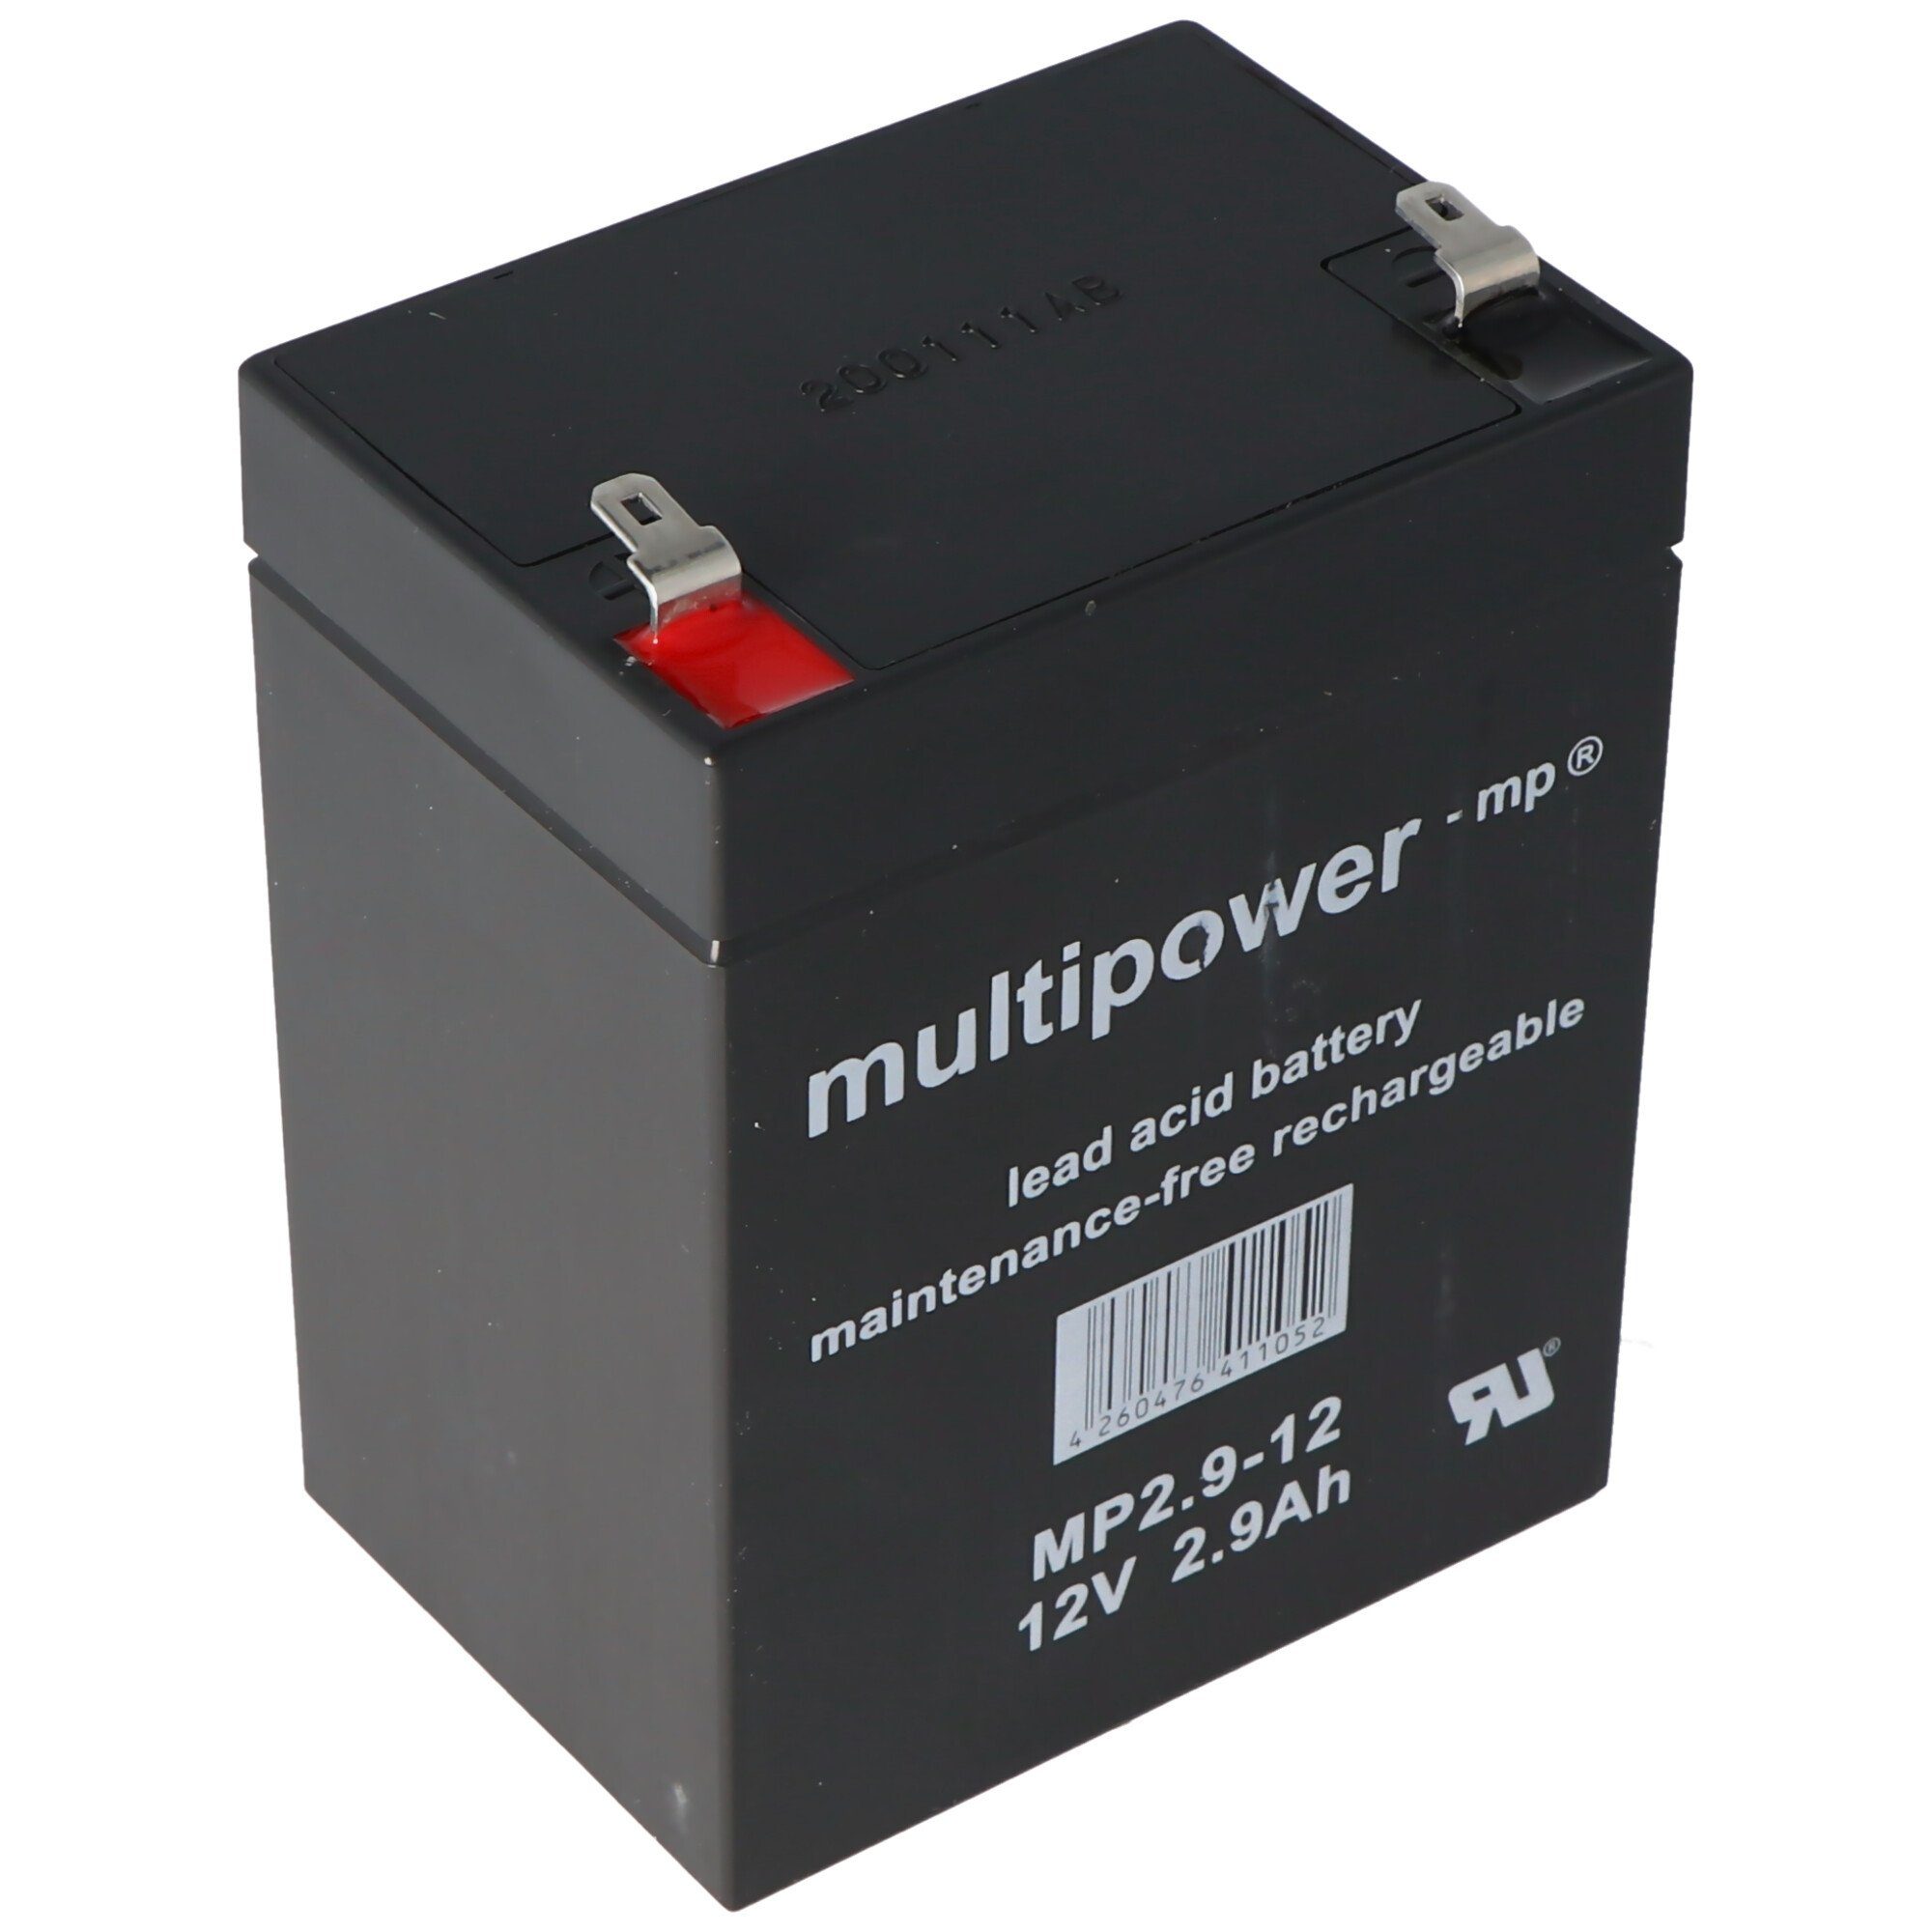 Multipower Akku passend für 65 Roadboy Batterie Systems LD V) mobiles mAh Akku PA-Sounds für (12,0 2900